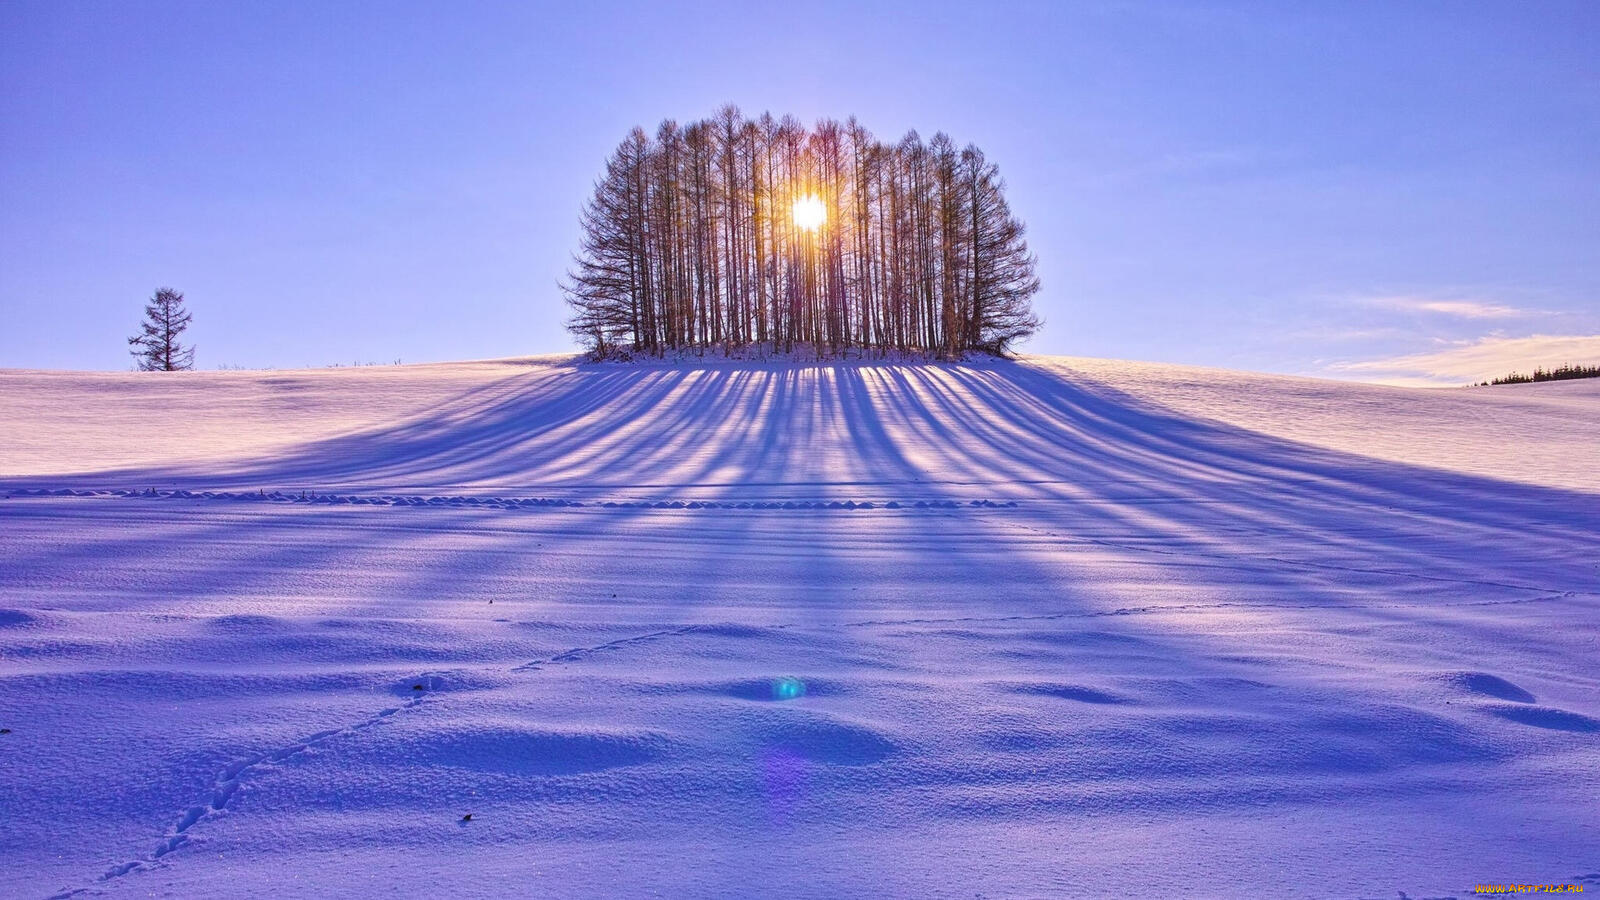 Бесплатное фото Островок с деревьями на снежном поле